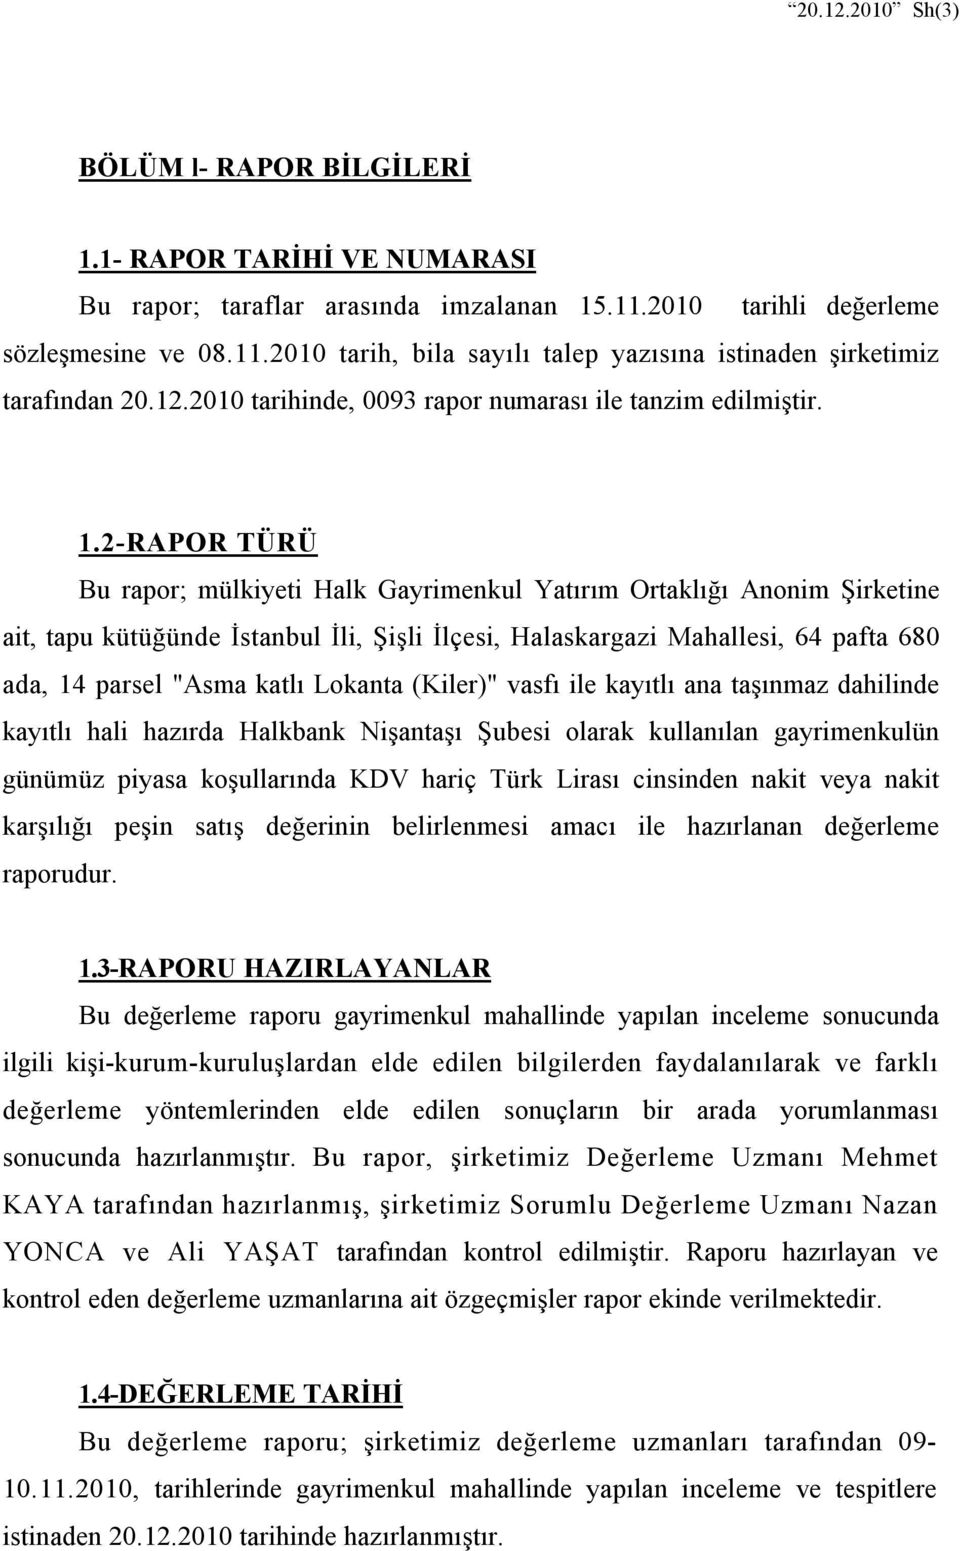 2-RAPOR TÜRÜ Bu rapor; mülkiyeti Halk Gayrimenkul Yatırım Ortaklığı Anonim Şirketine ait, tapu kütüğünde İstanbul İli, Şişli İlçesi, Halaskargazi Mahallesi, 64 pafta 680 ada, 14 parsel "Asma katlı